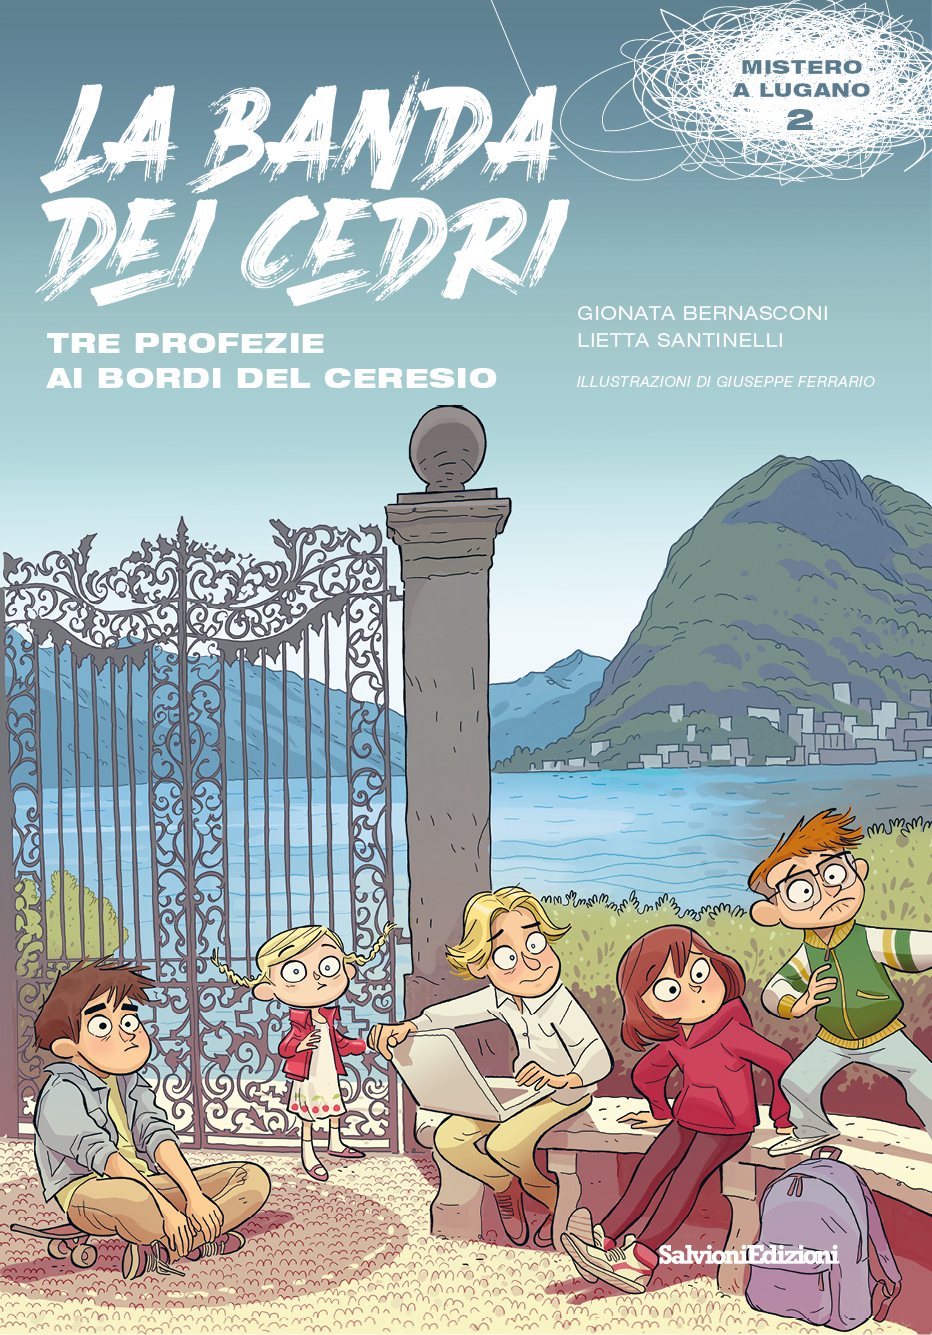 Il sussurro del vento (Italian Edition) eBook : Basso, Mauro